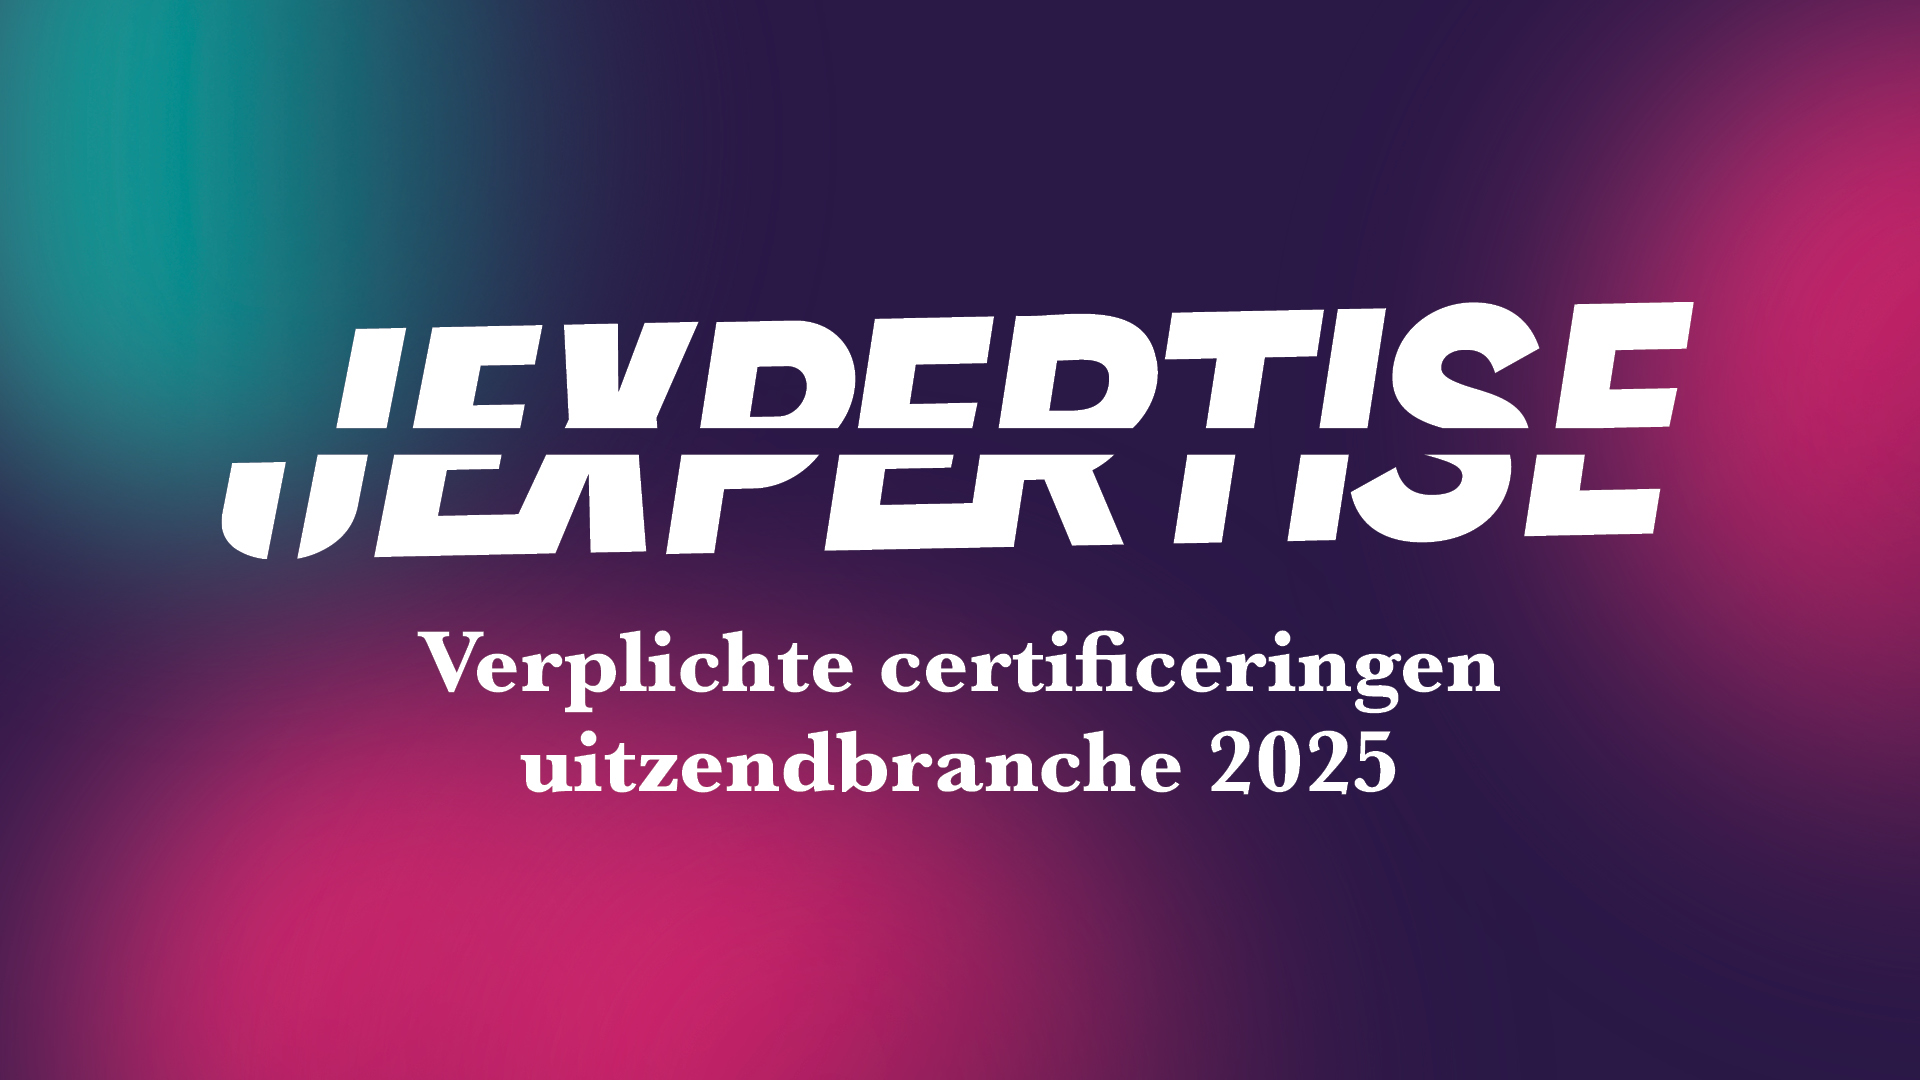 Verplichte-certificeringen-uitzendbranche 2025_Header